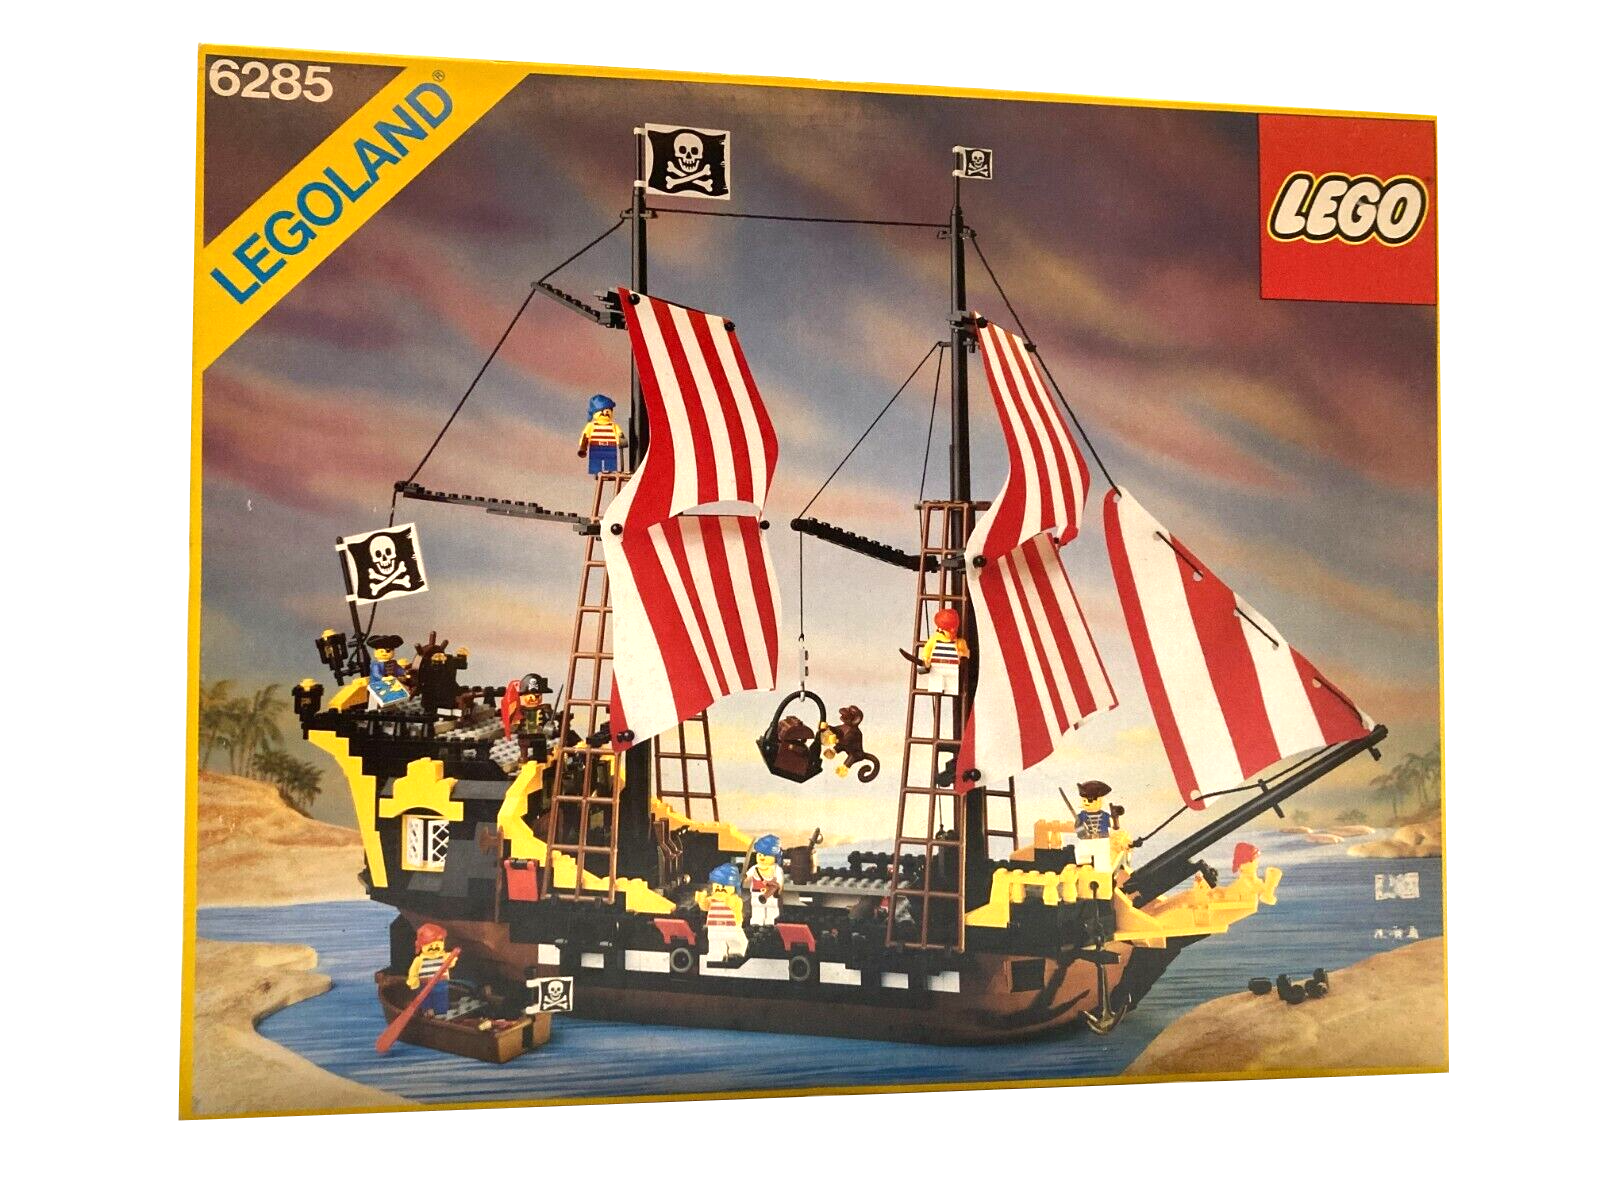 LEGO Black Seas Barracuda set